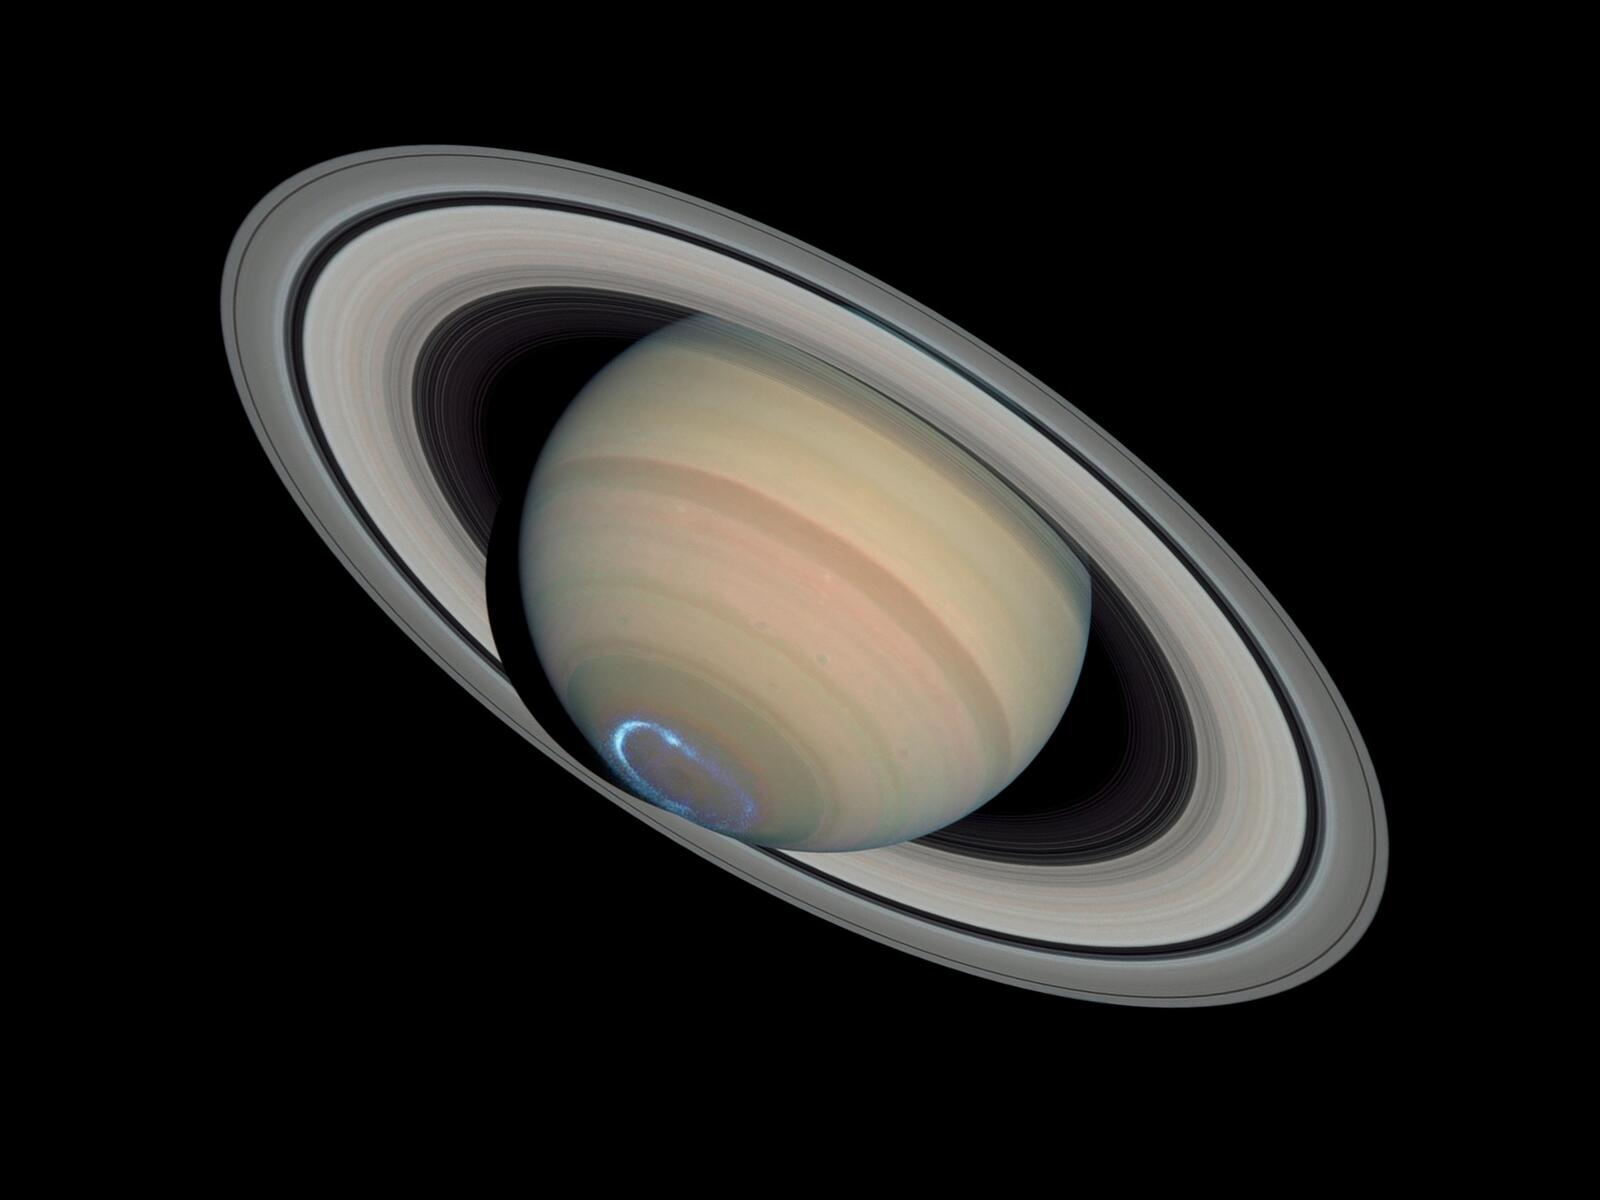 Бесплатное фото Сатурн с его потрясающими кольцами на фоне черного космоса